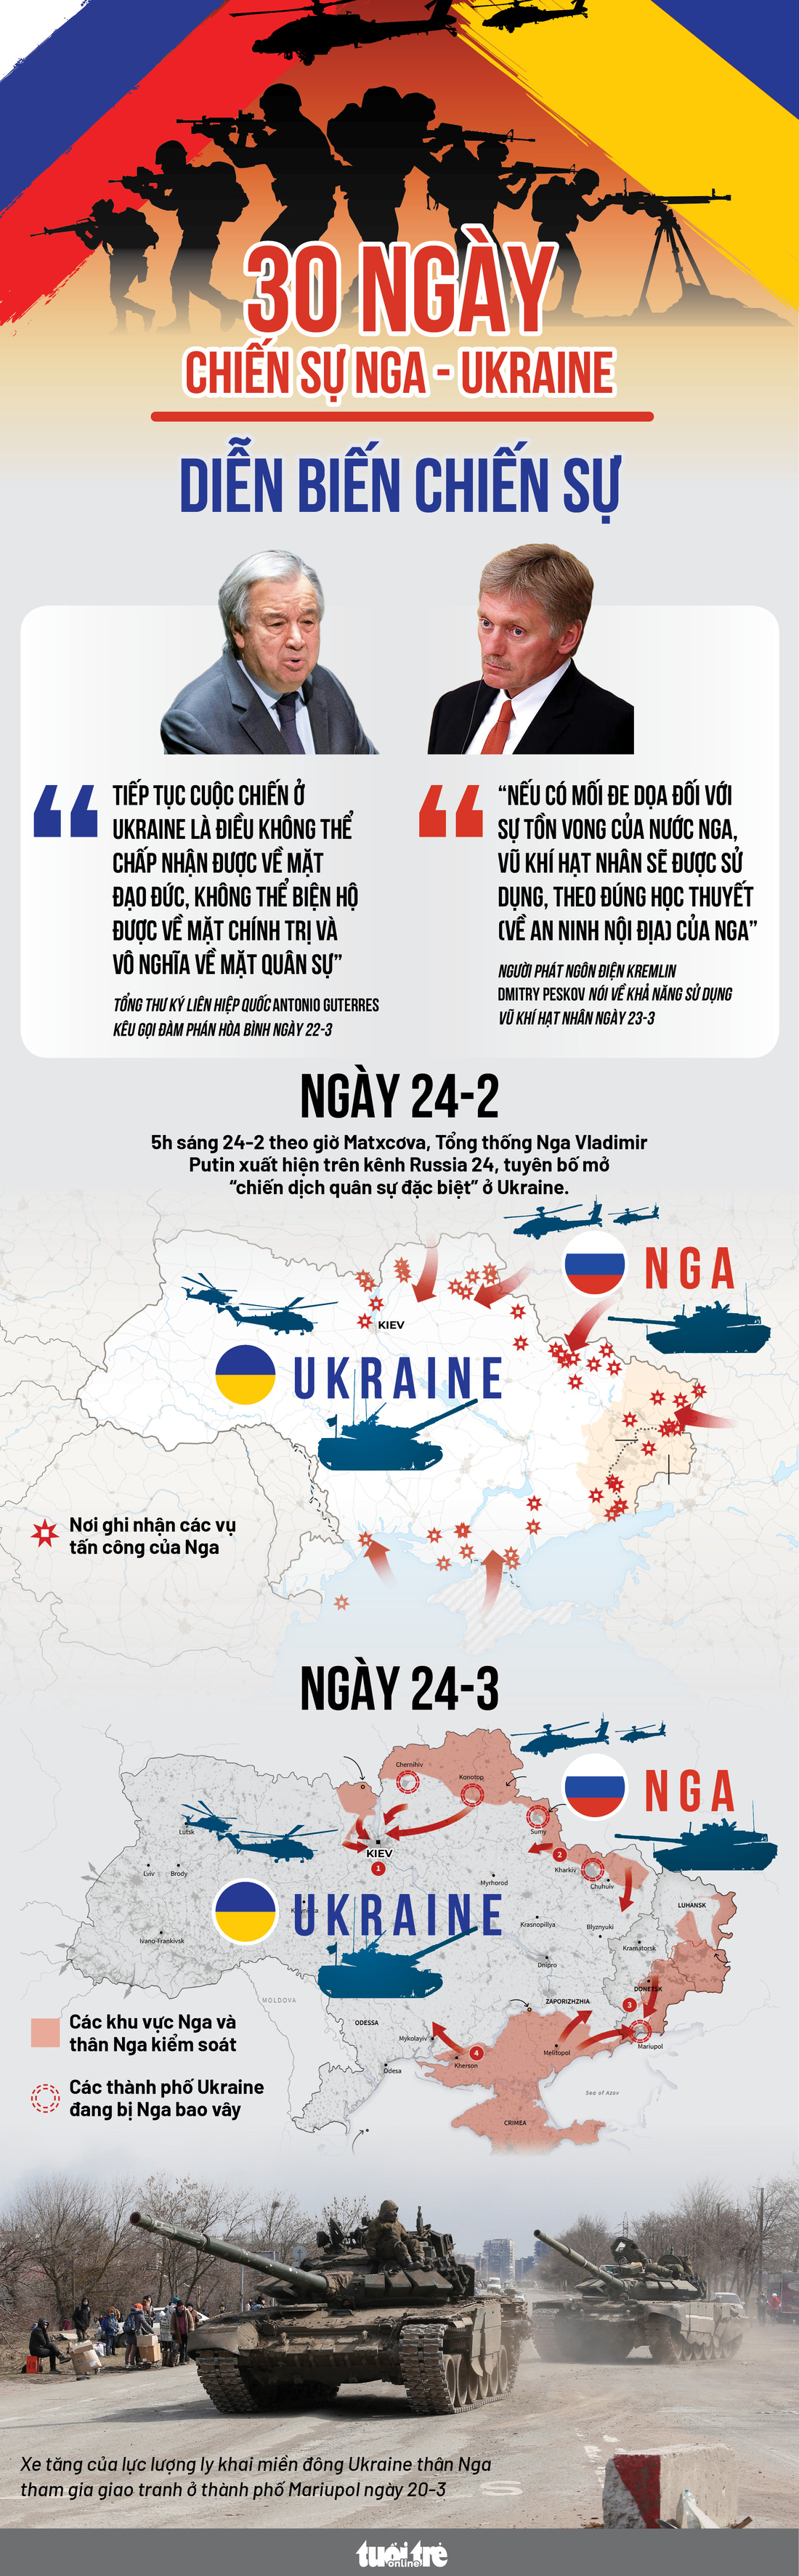 Cục diện chiến sự Ukraine sau 30 ngày - Ảnh 1.